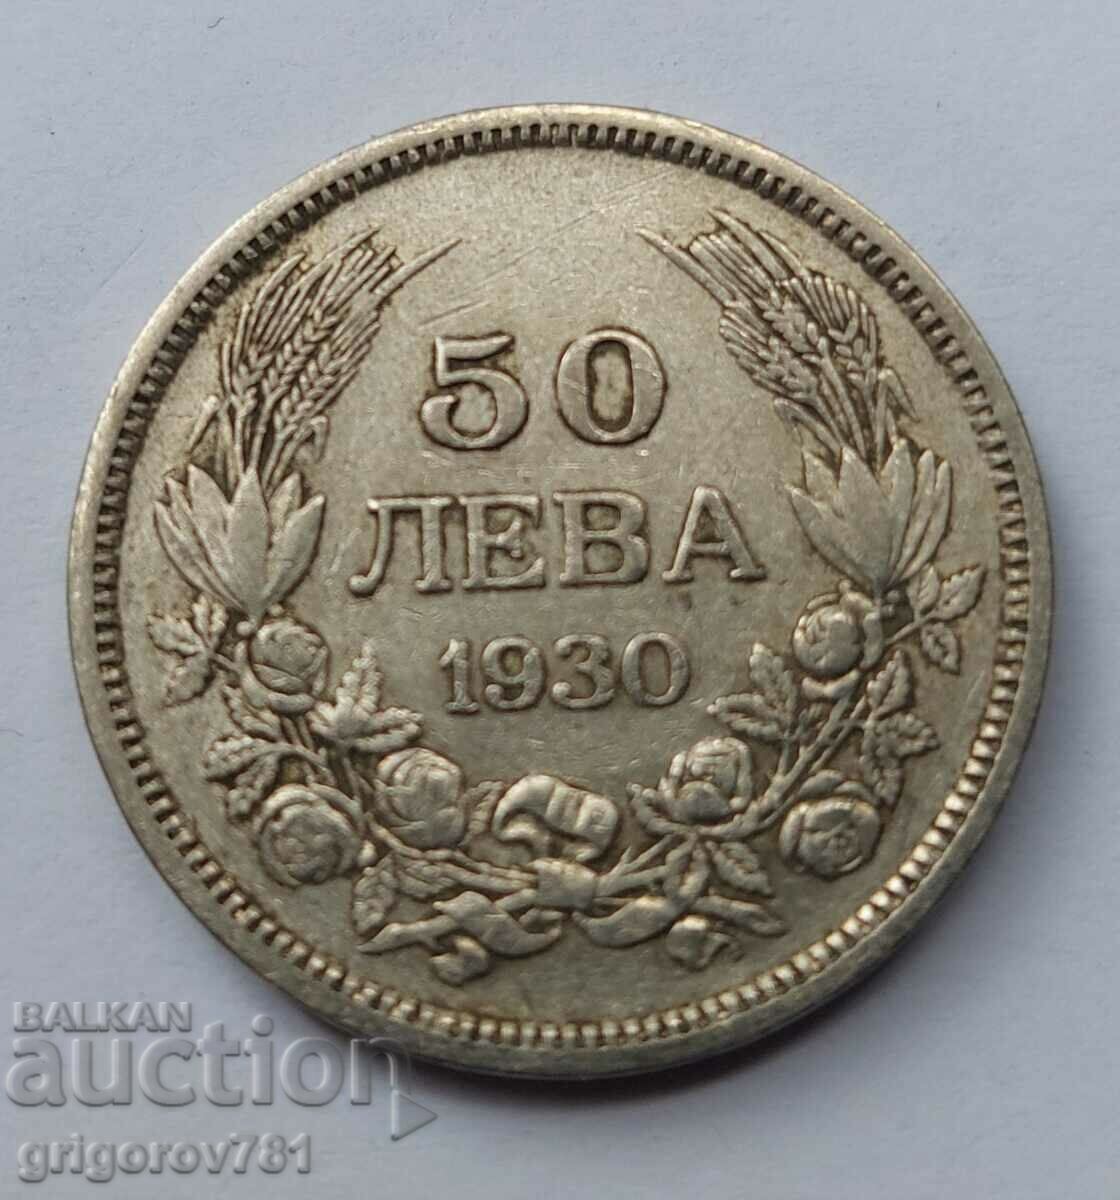 Ασήμι 50 λέβα Βουλγαρία 1930 - ασημένιο νόμισμα #57